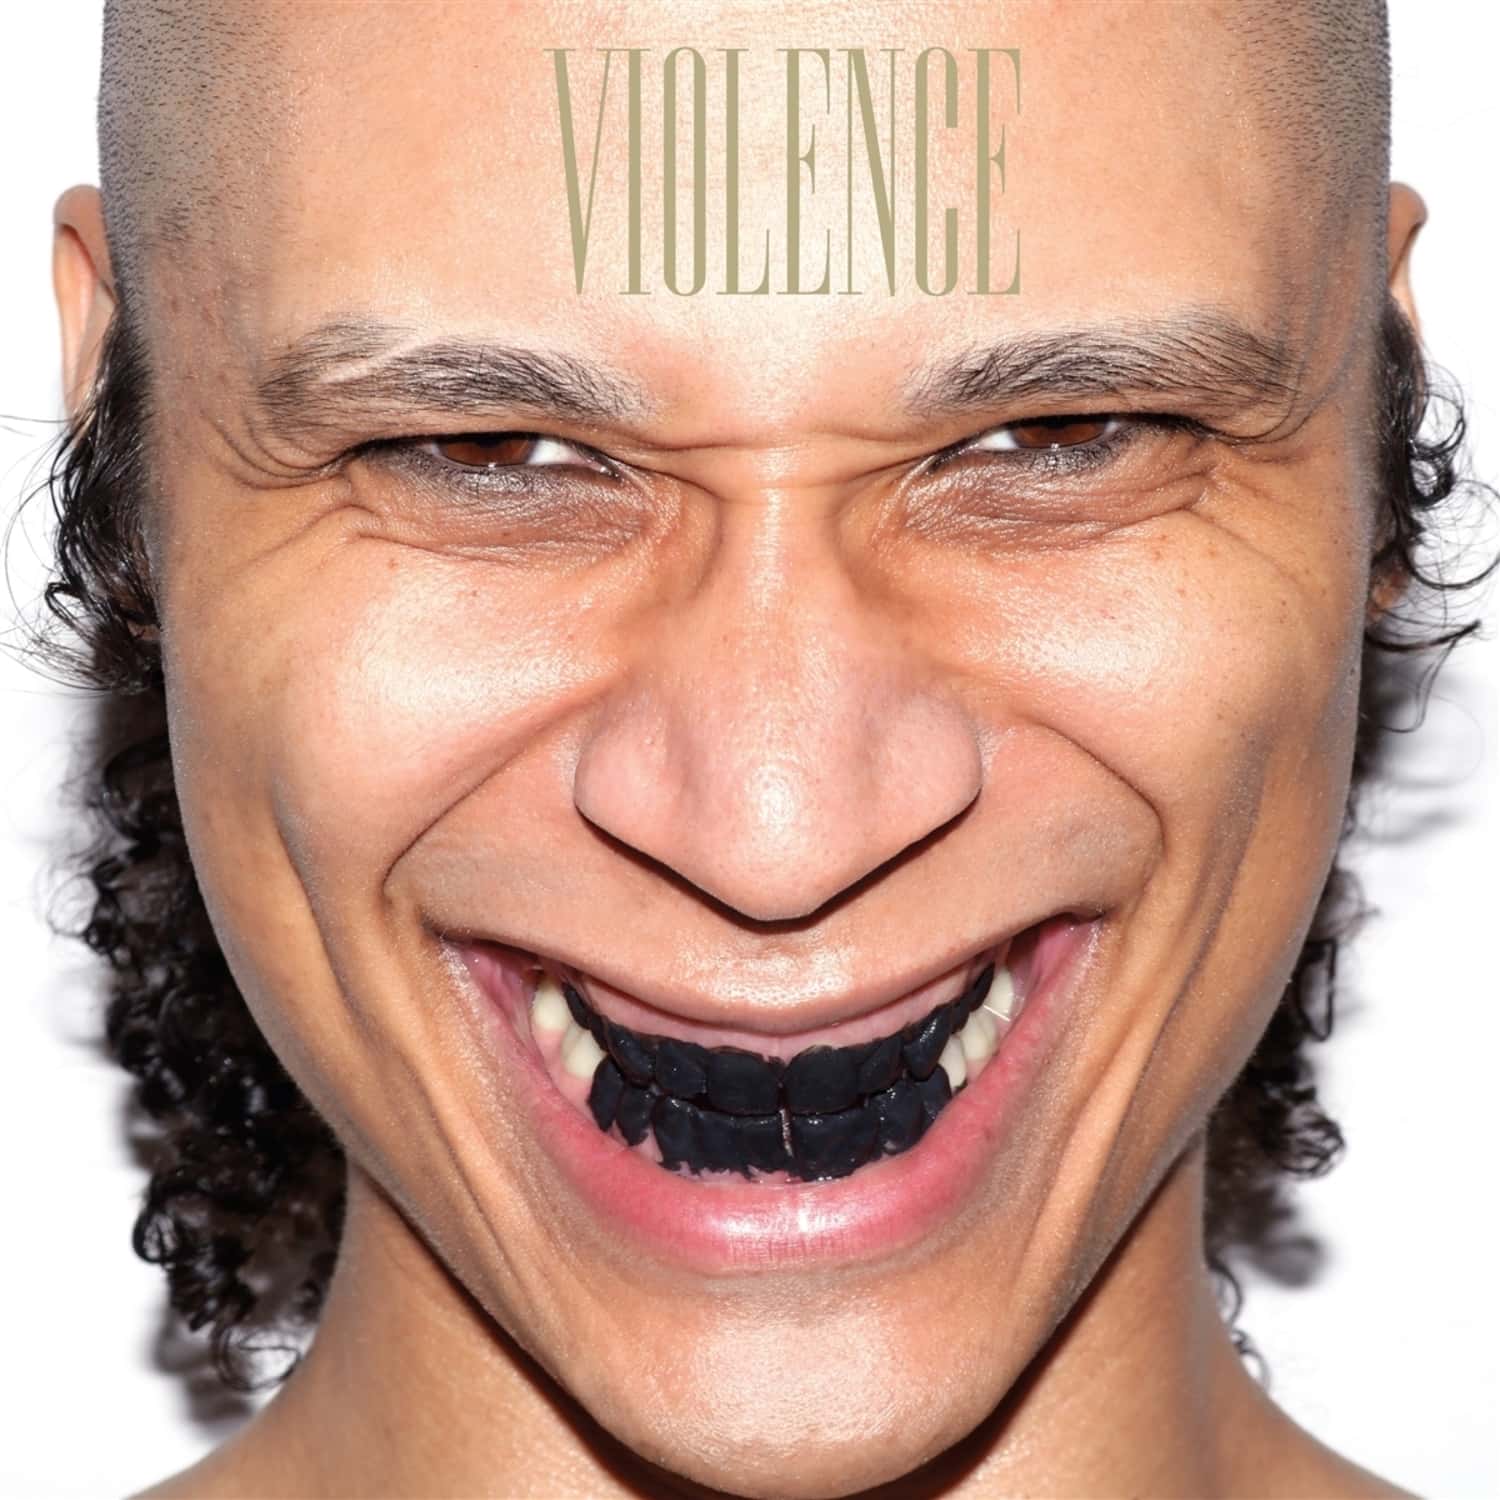 Violence - VIOLENCE 